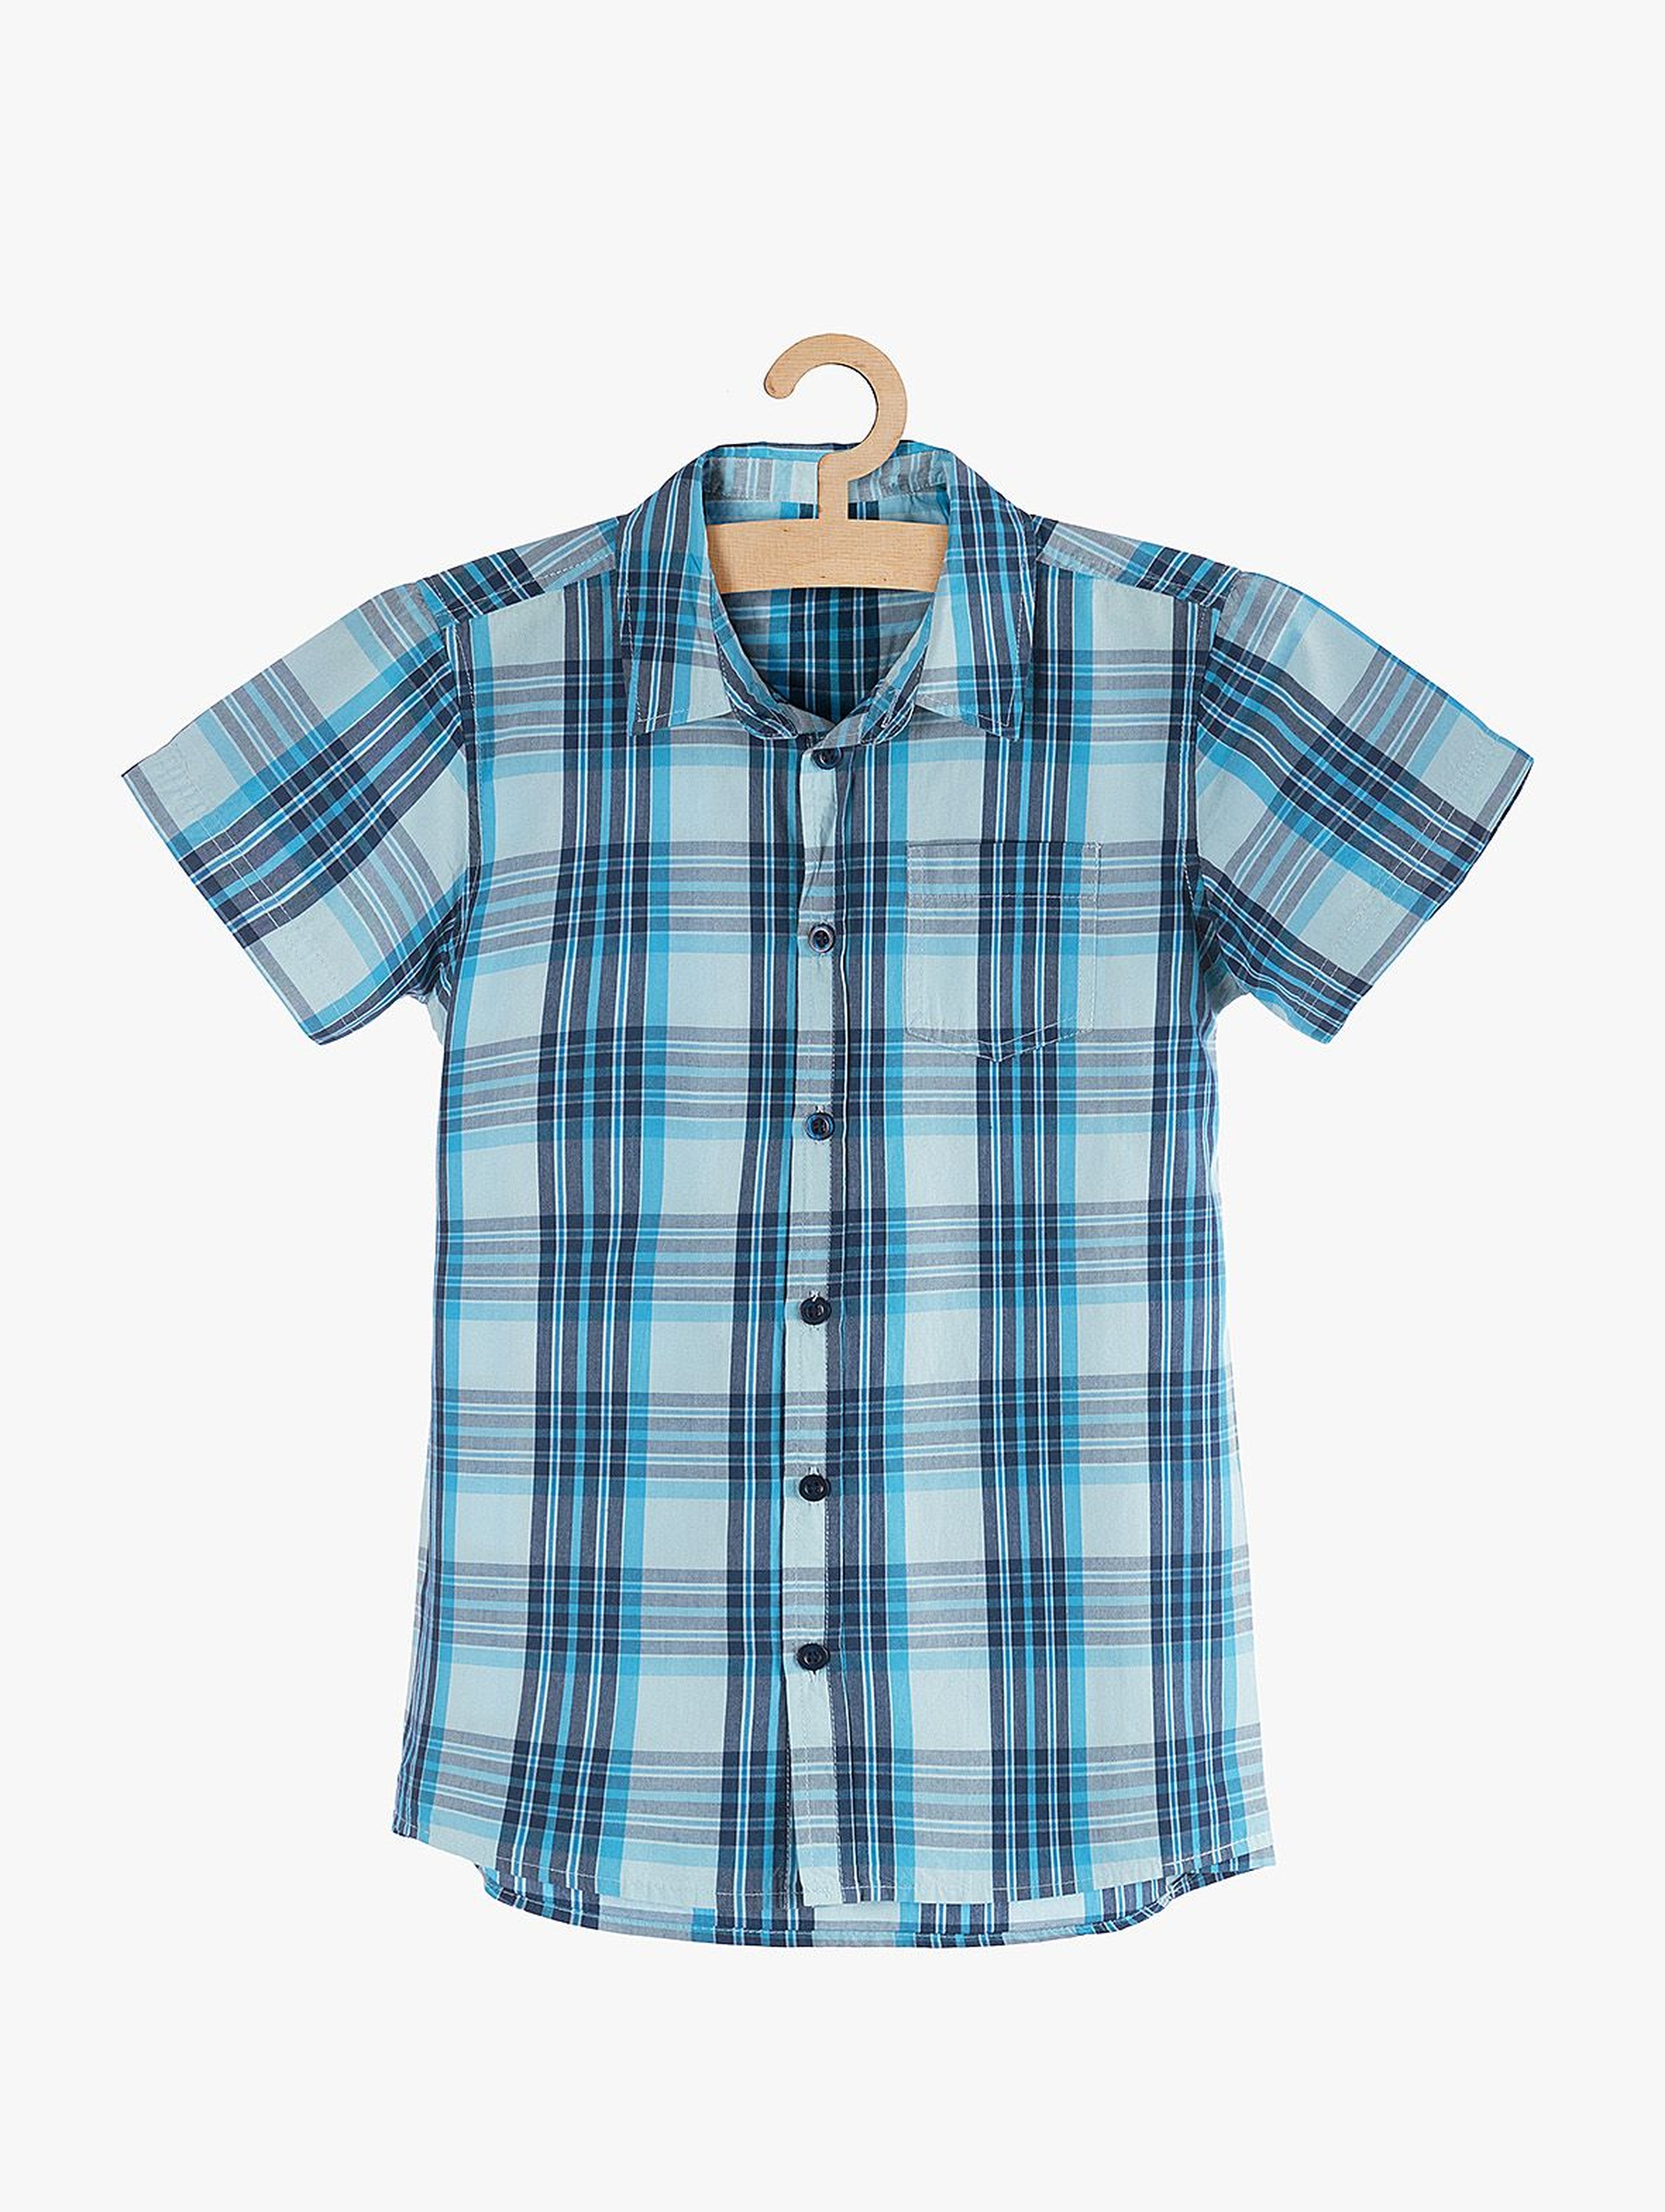 Koszula chłopięca rozpinana w niebieską kratę